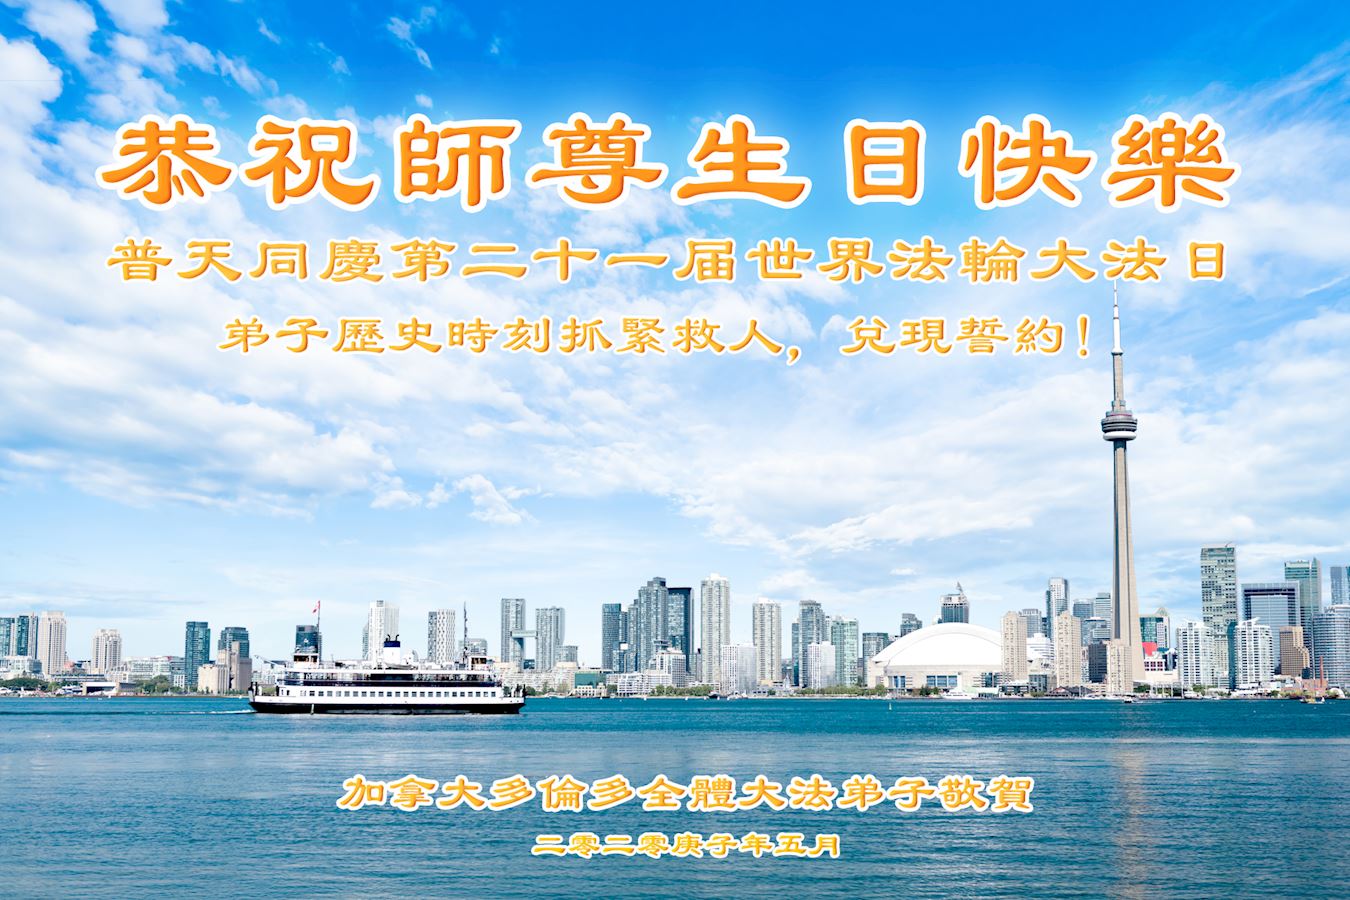 Image for article Toronto, Canada : Activité organisée sur internet pour célébrer la Journée mondiale du Falun Dafa